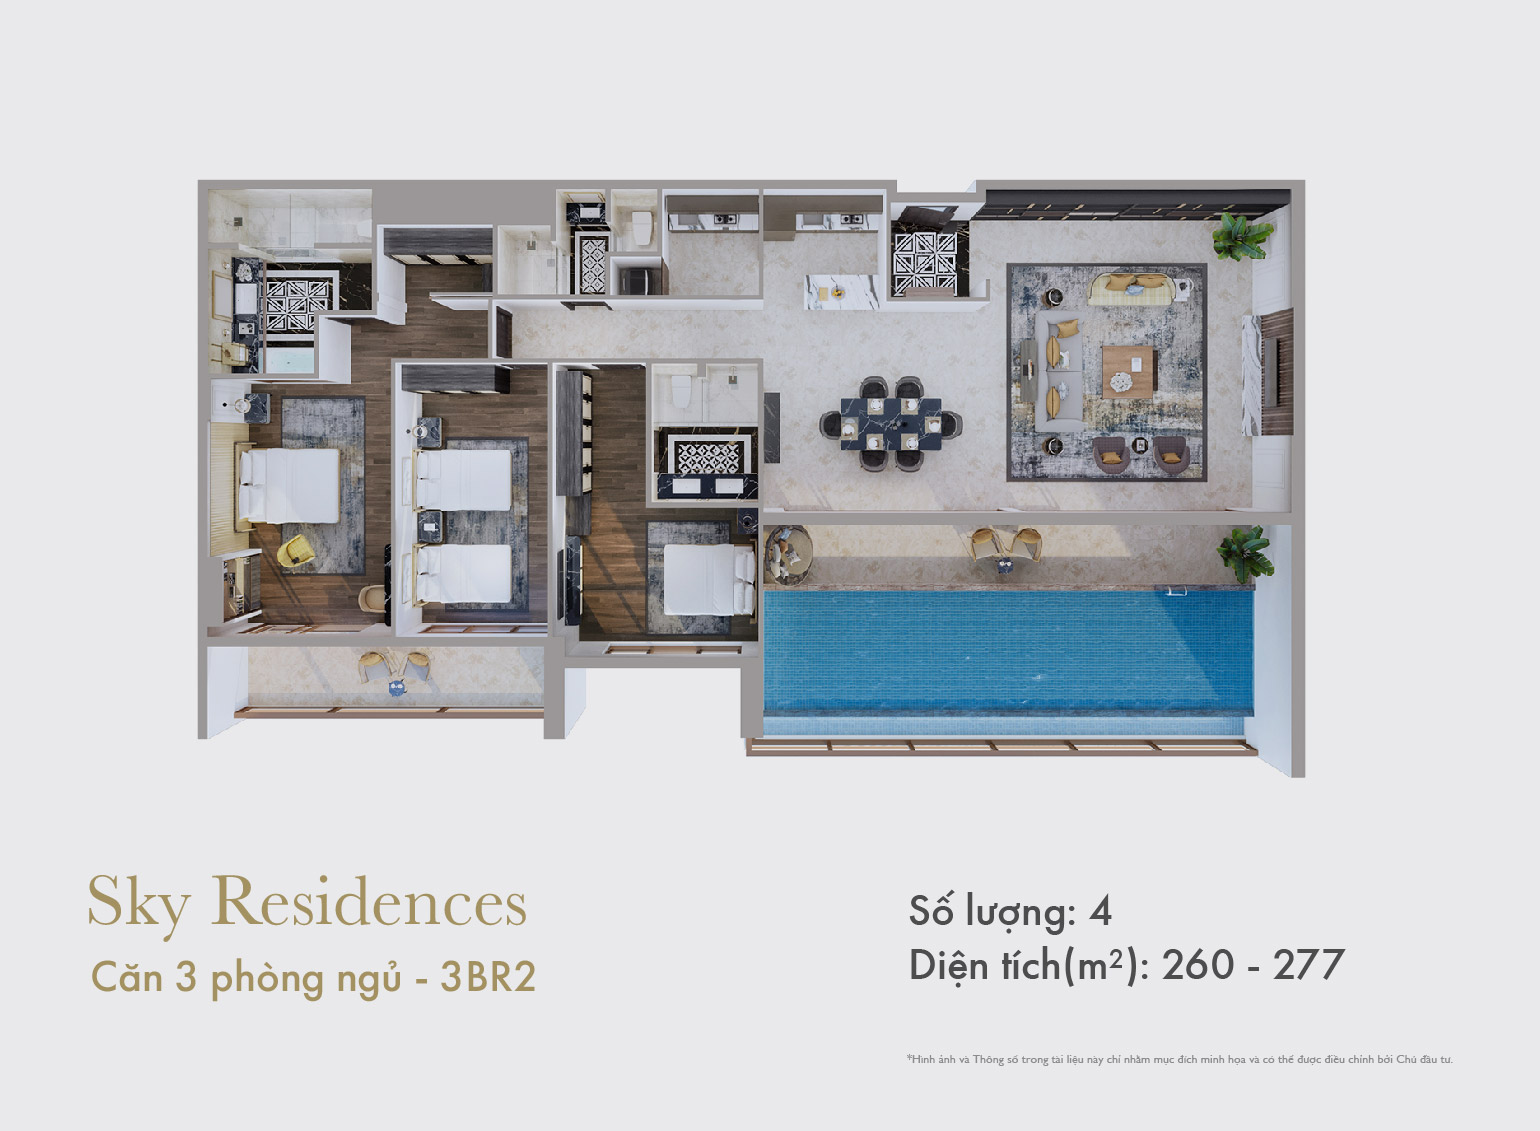 Sky Residences - Mặt bằng căn 3 phòng ngủ mẫu 3